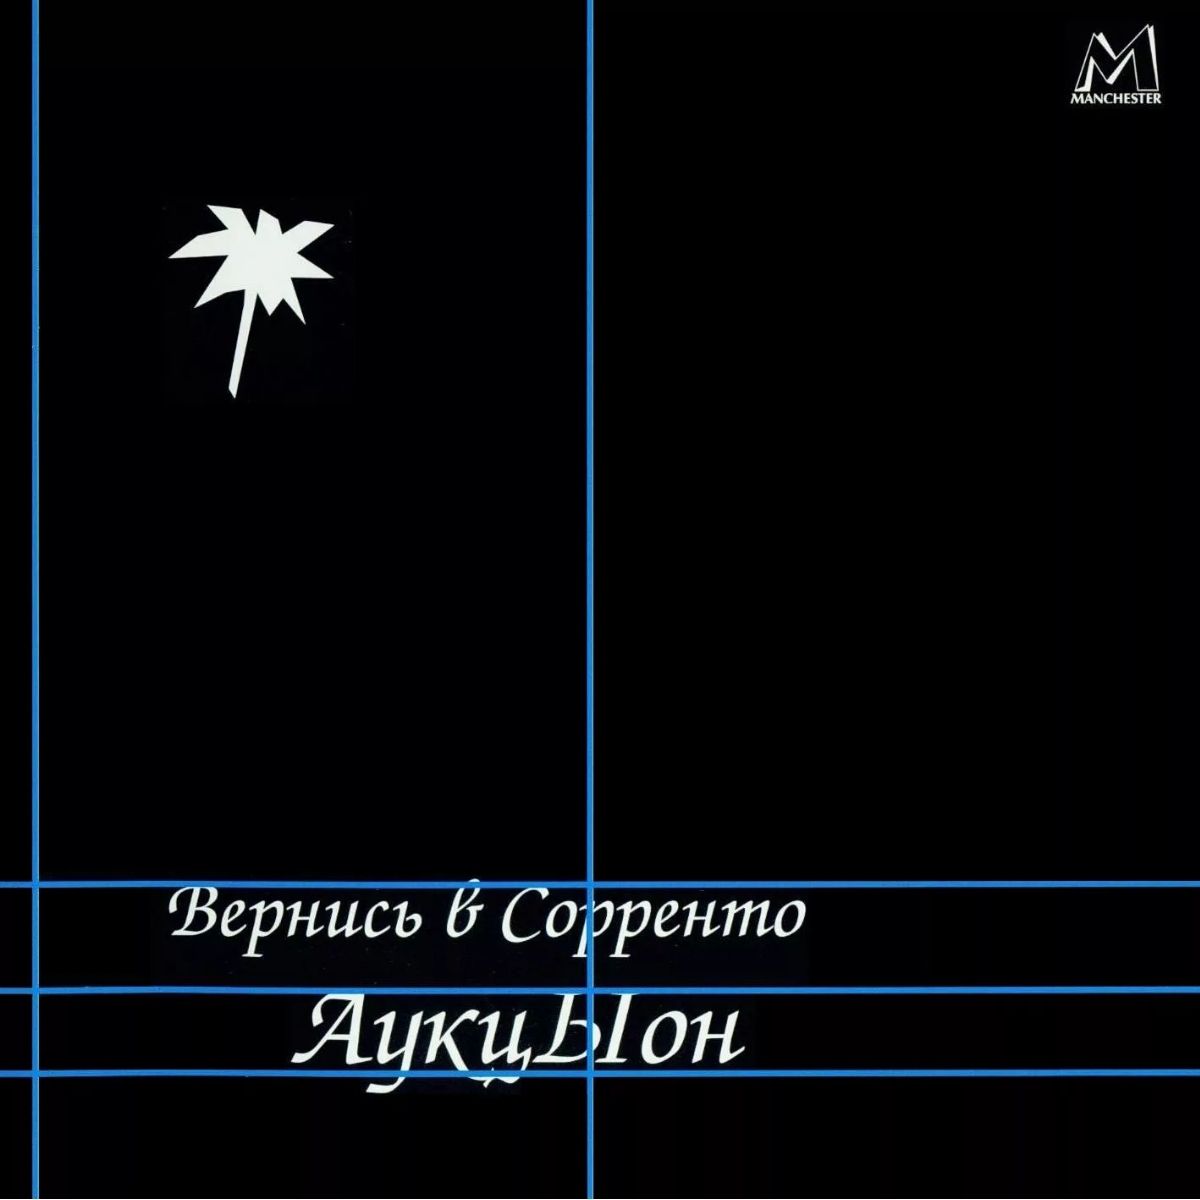 Portada del álbum de debut "Return to Sorrento" de Auktsion